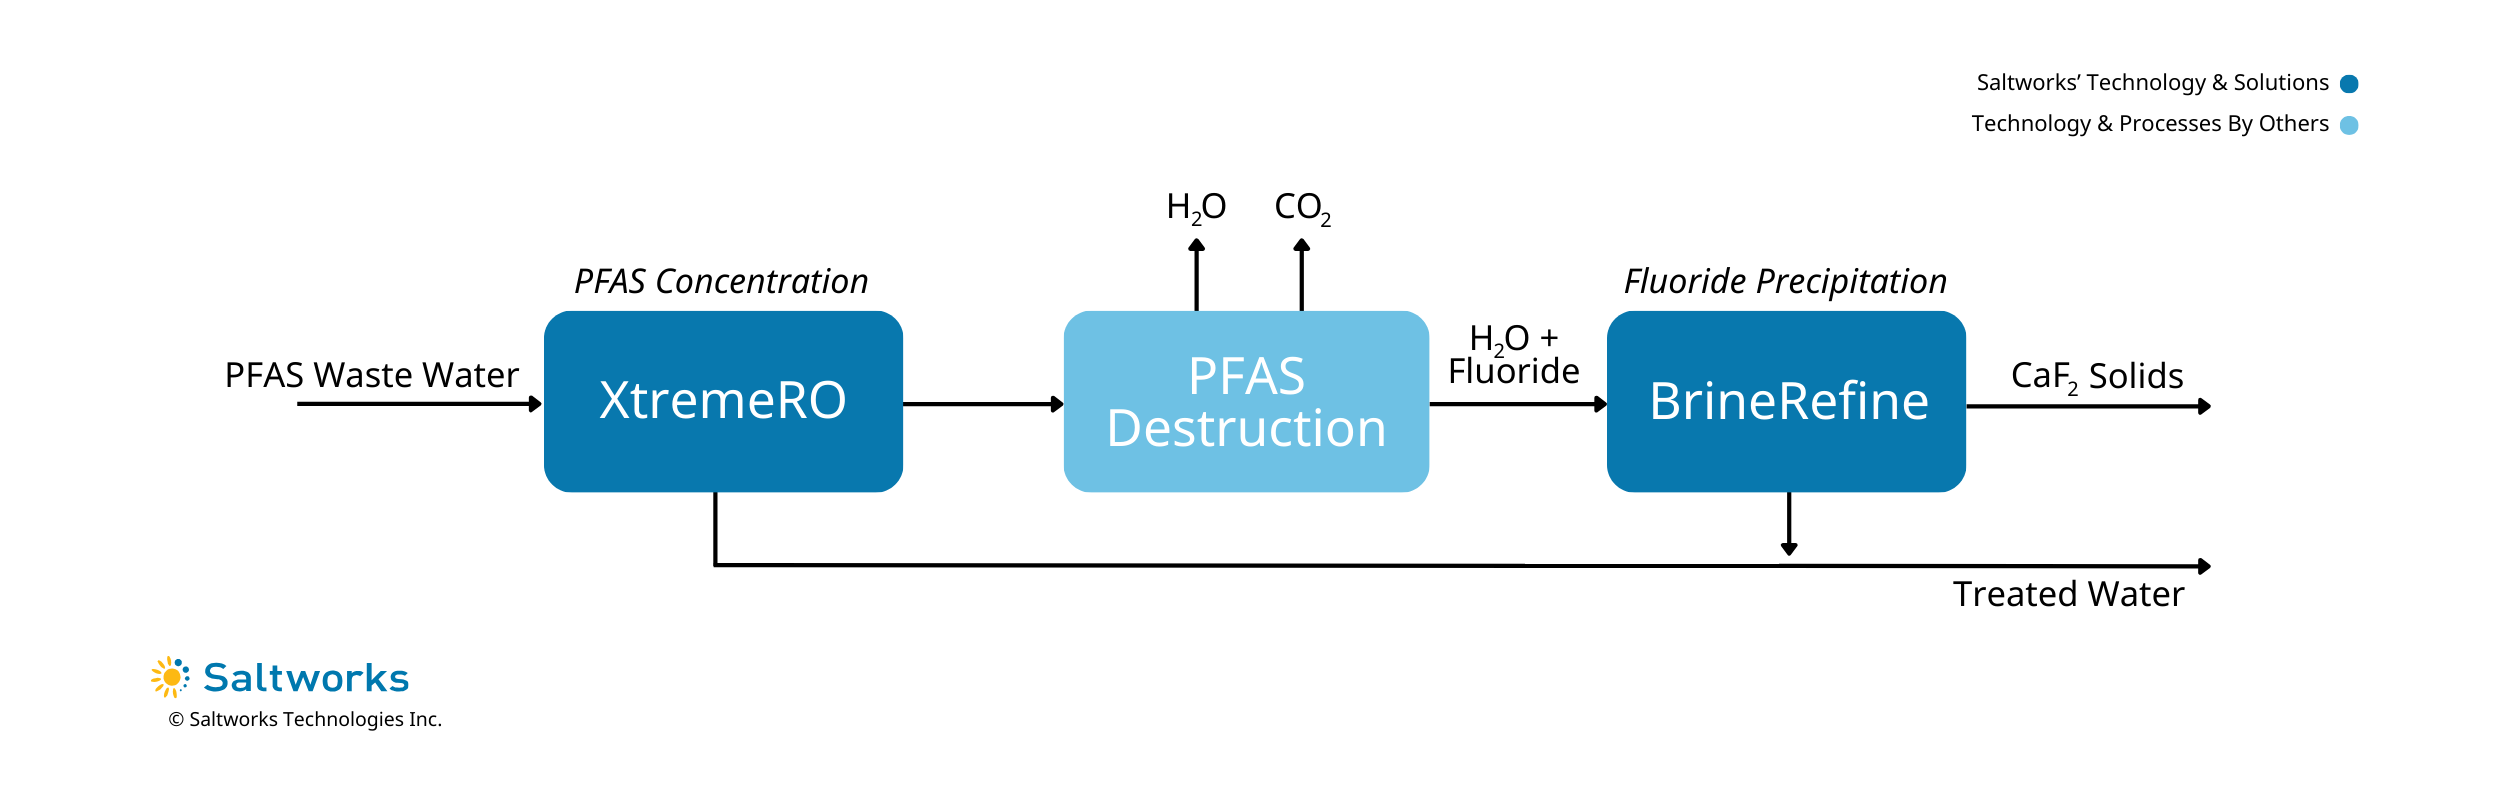 Process flow diagram showing a solution for PFAS chemicals